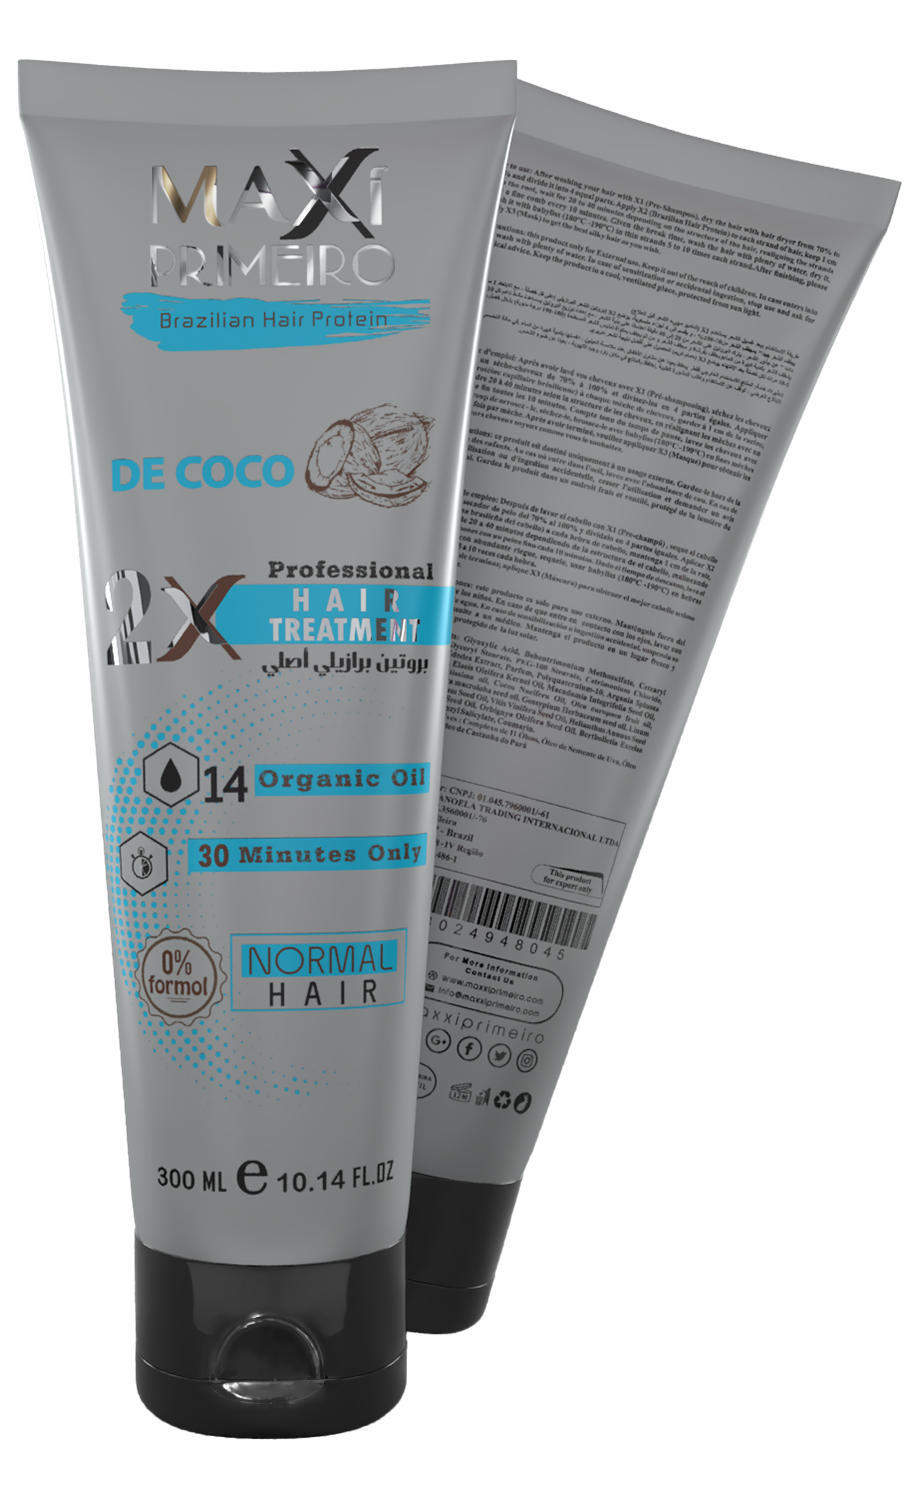 X2 Brazilian Hair protein 300ml De coco(Hair Treatment)